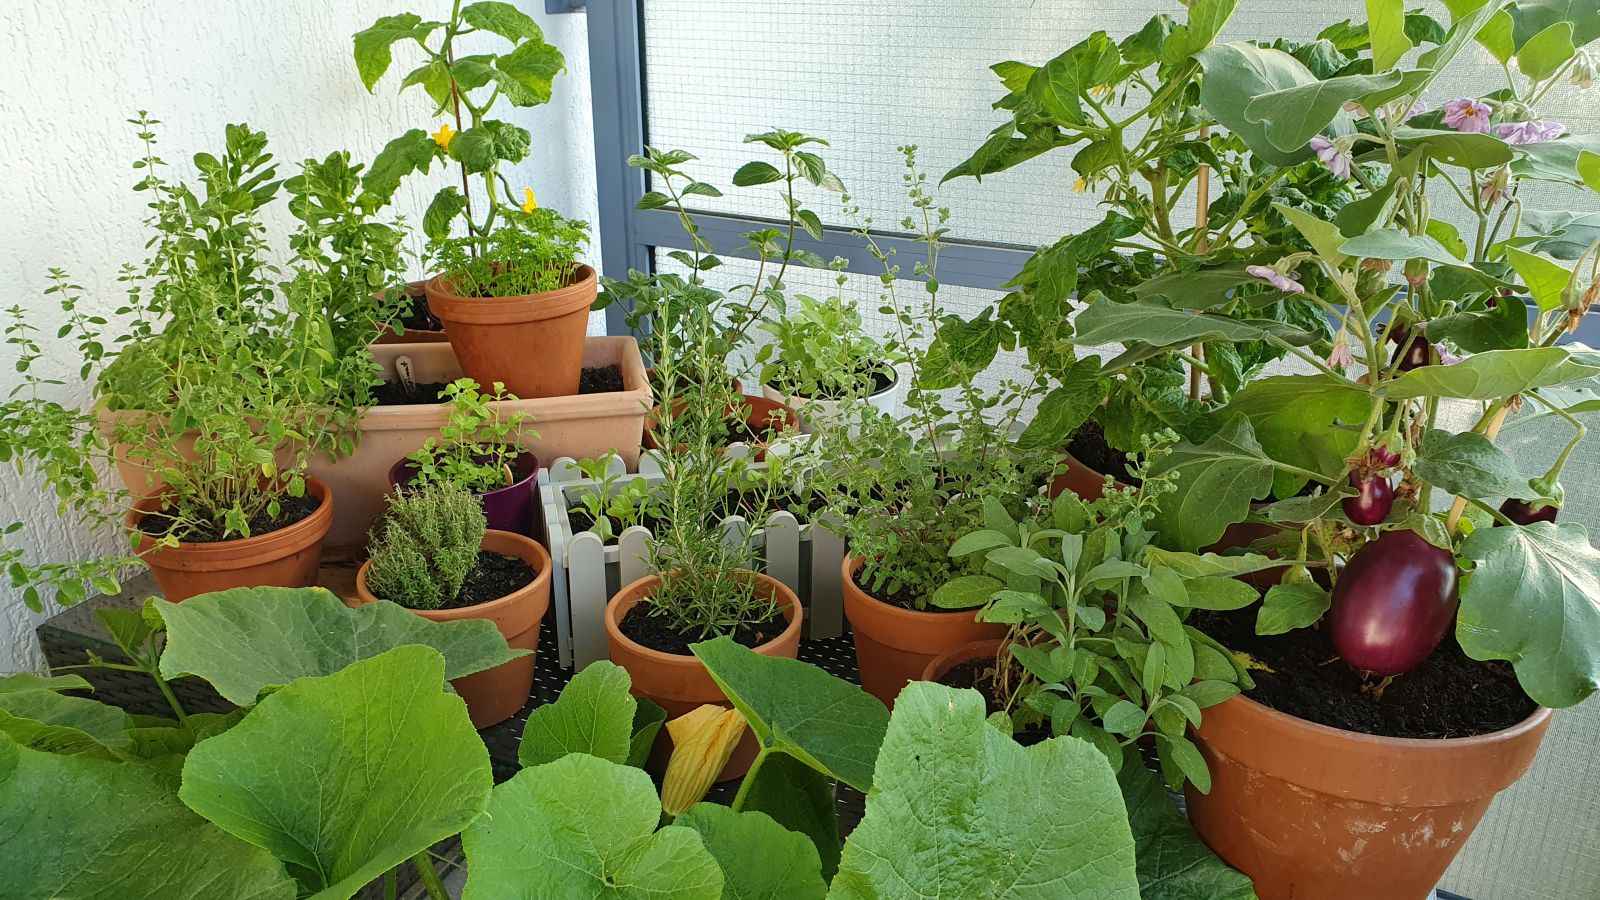 Willkommen auf dem Gemüse-Balkon